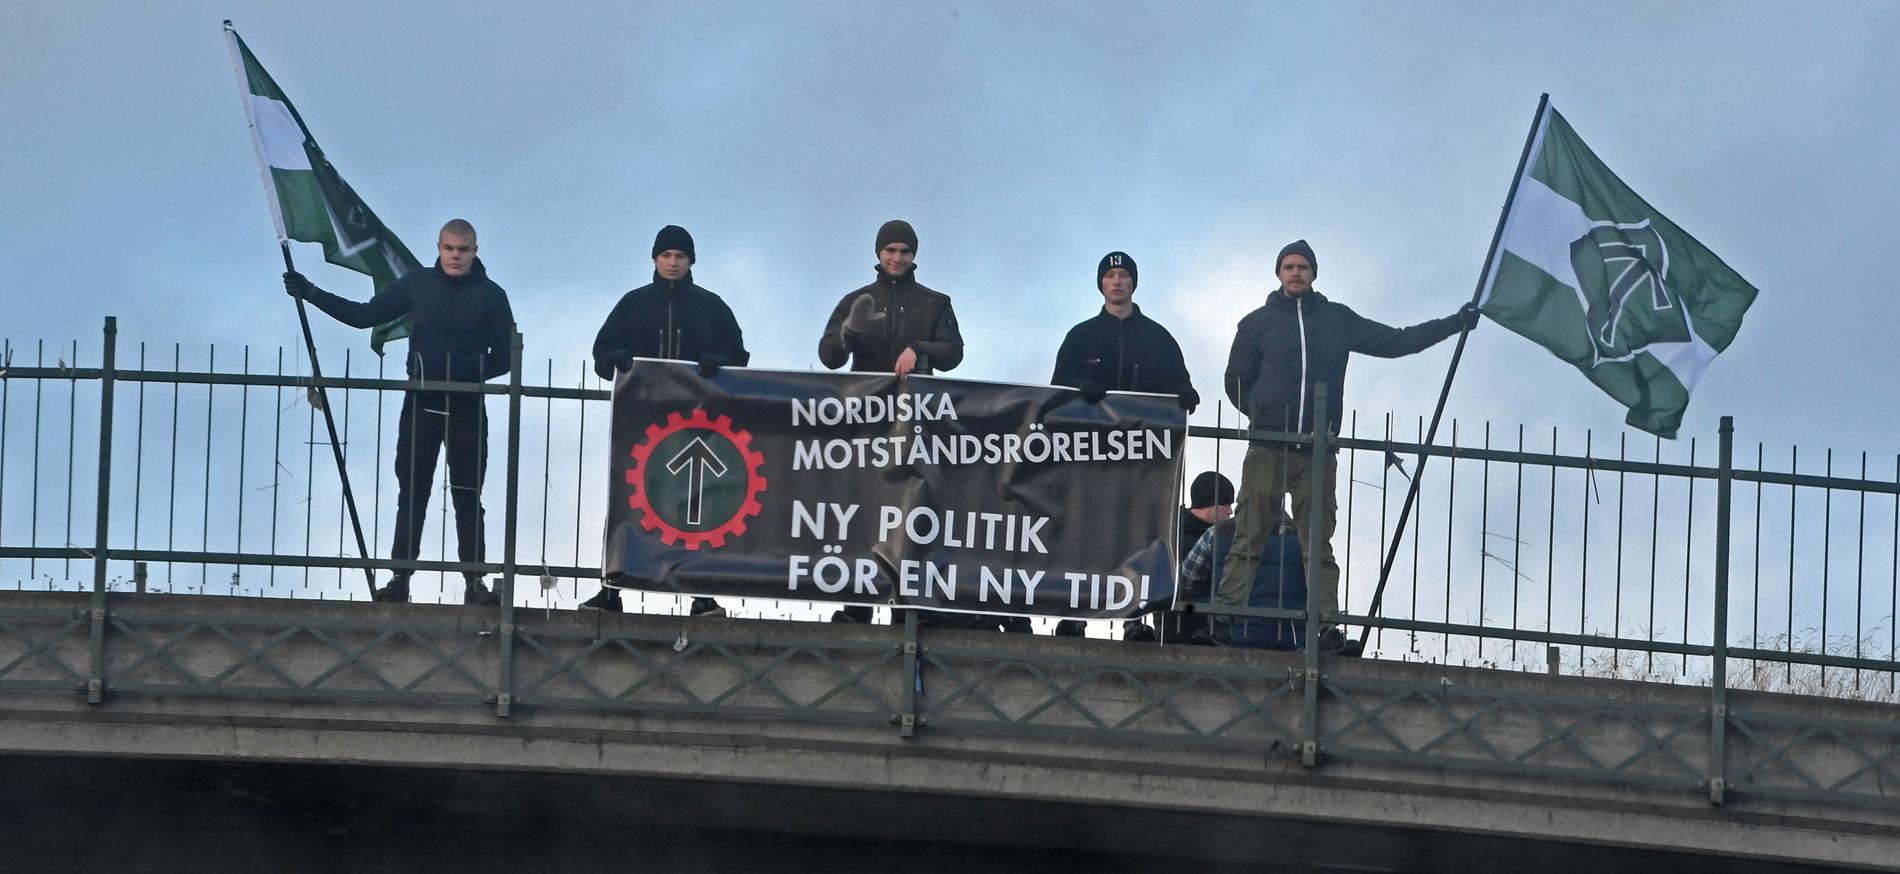 Nordiska motståndsrörelsen står för värsta sortens homofobi.